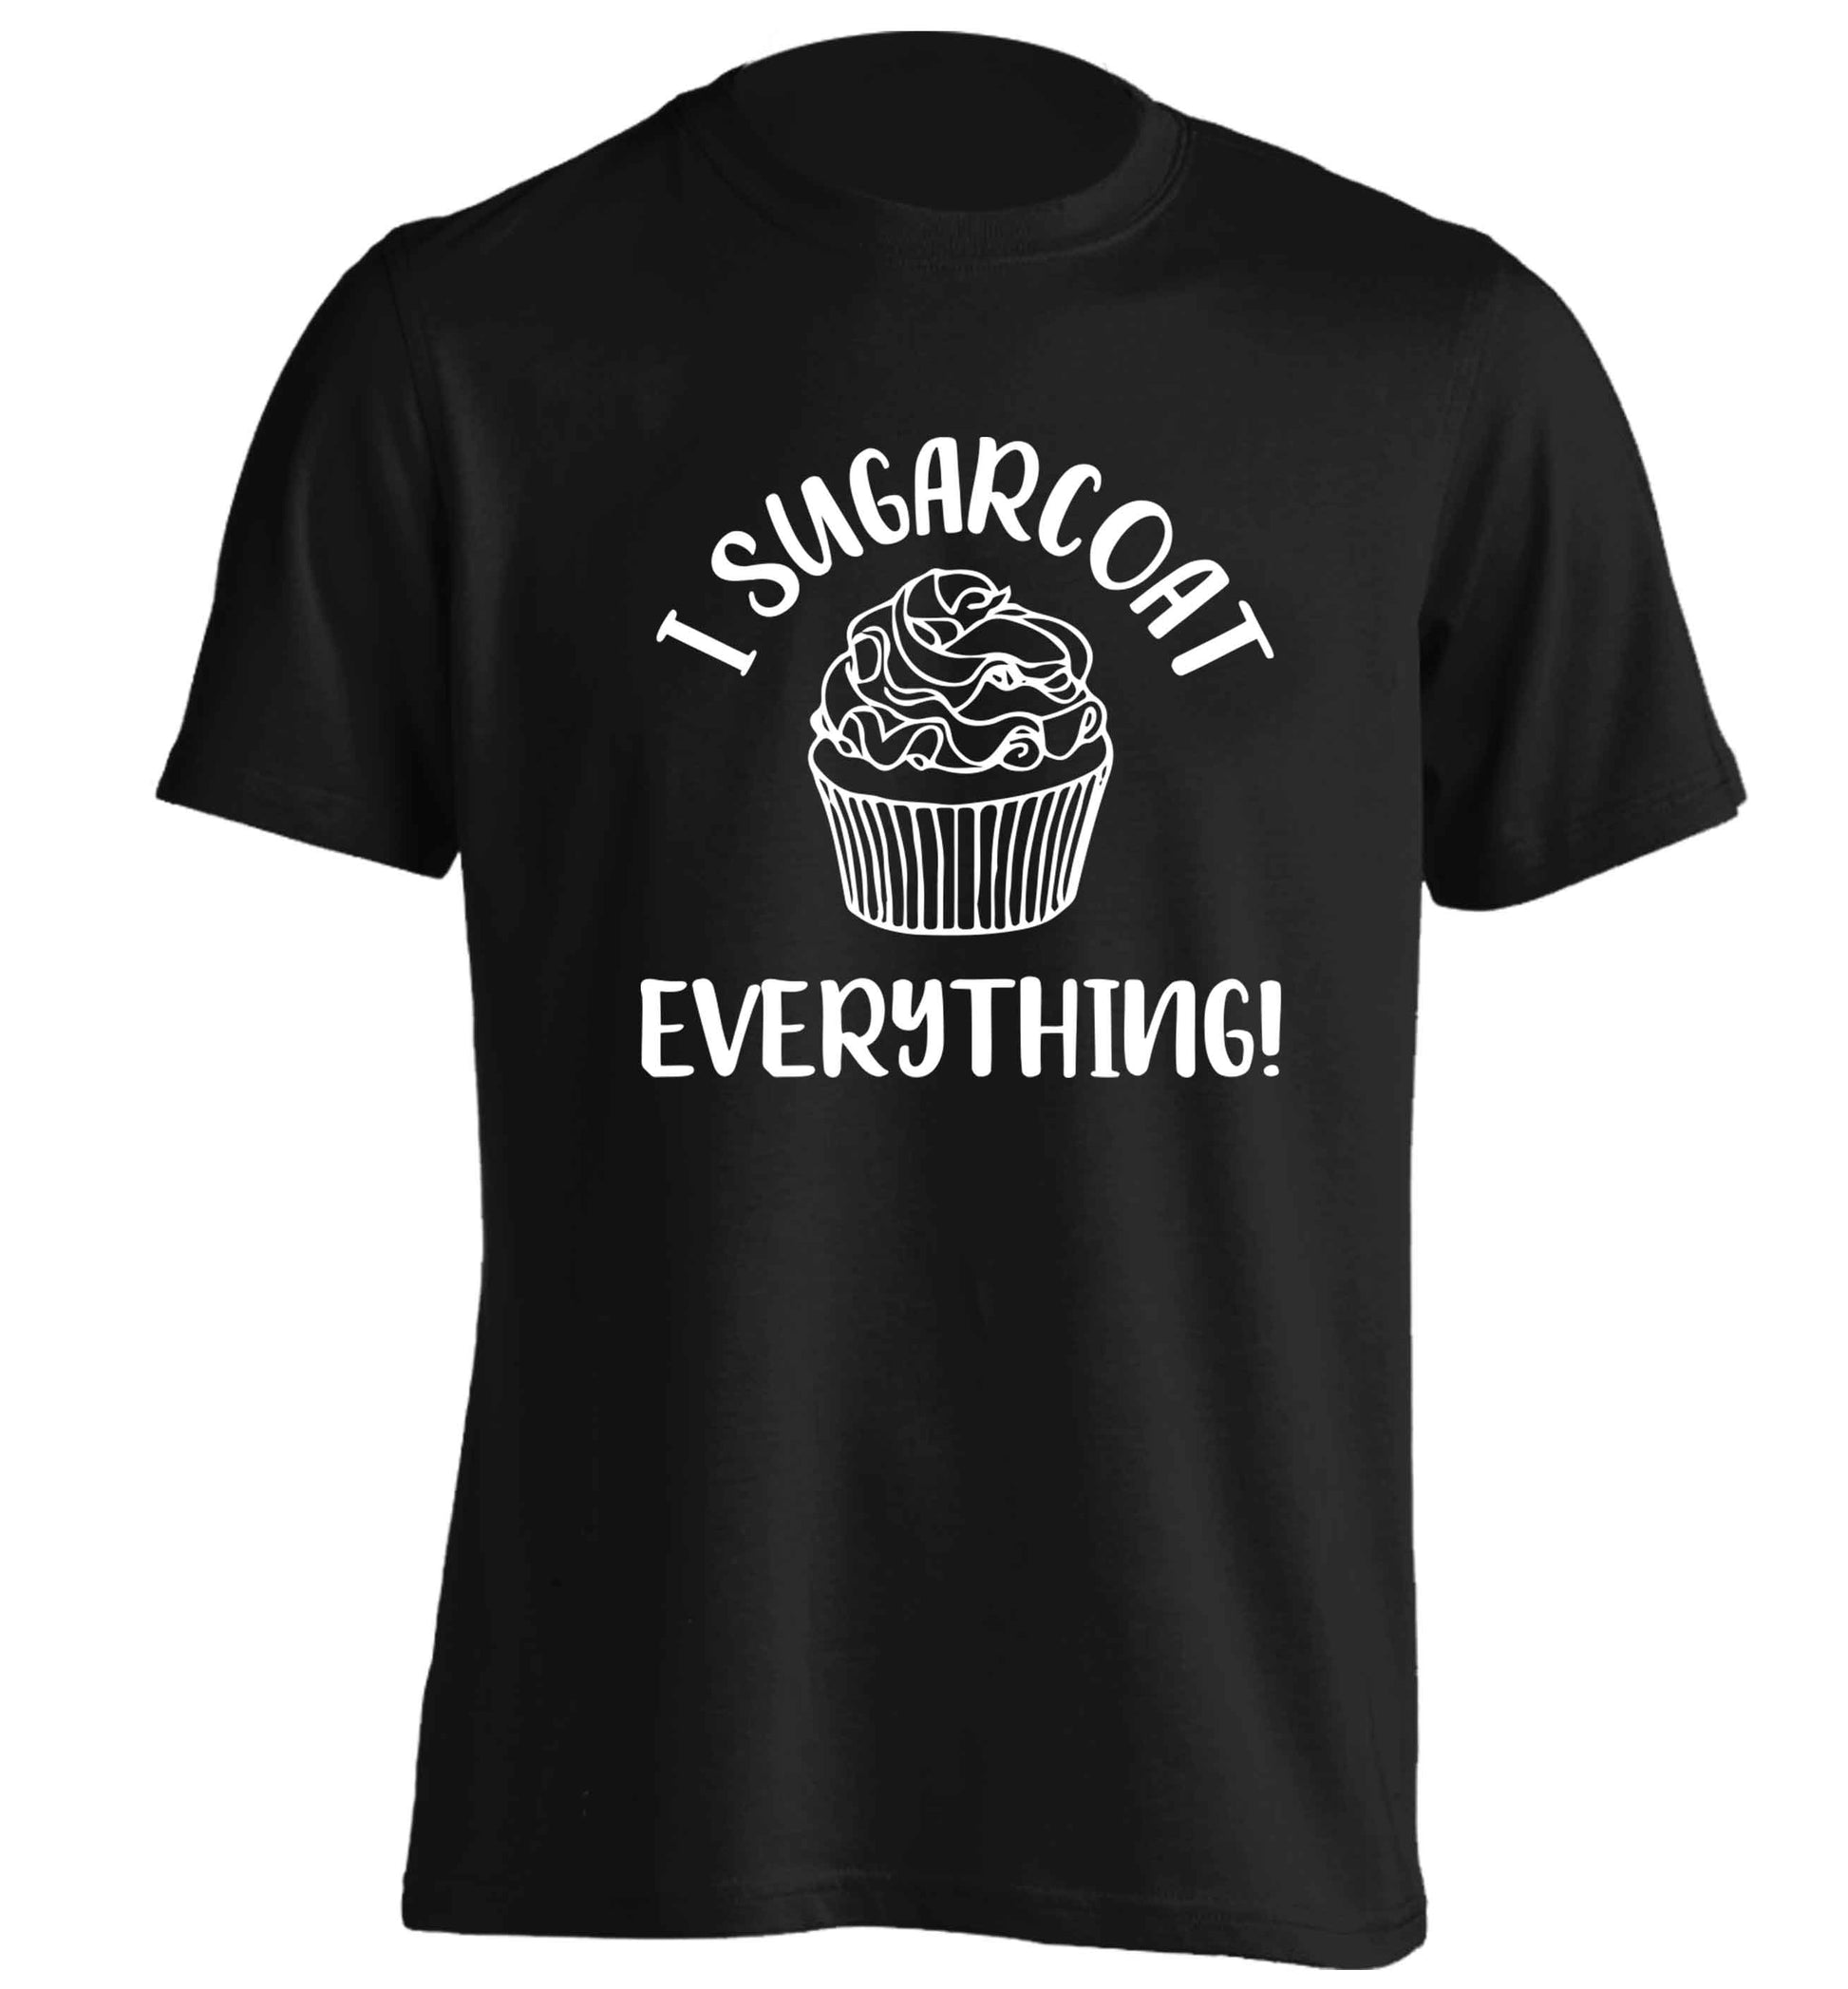 I sugarcoat everything adults unisex black Tshirt 2XL